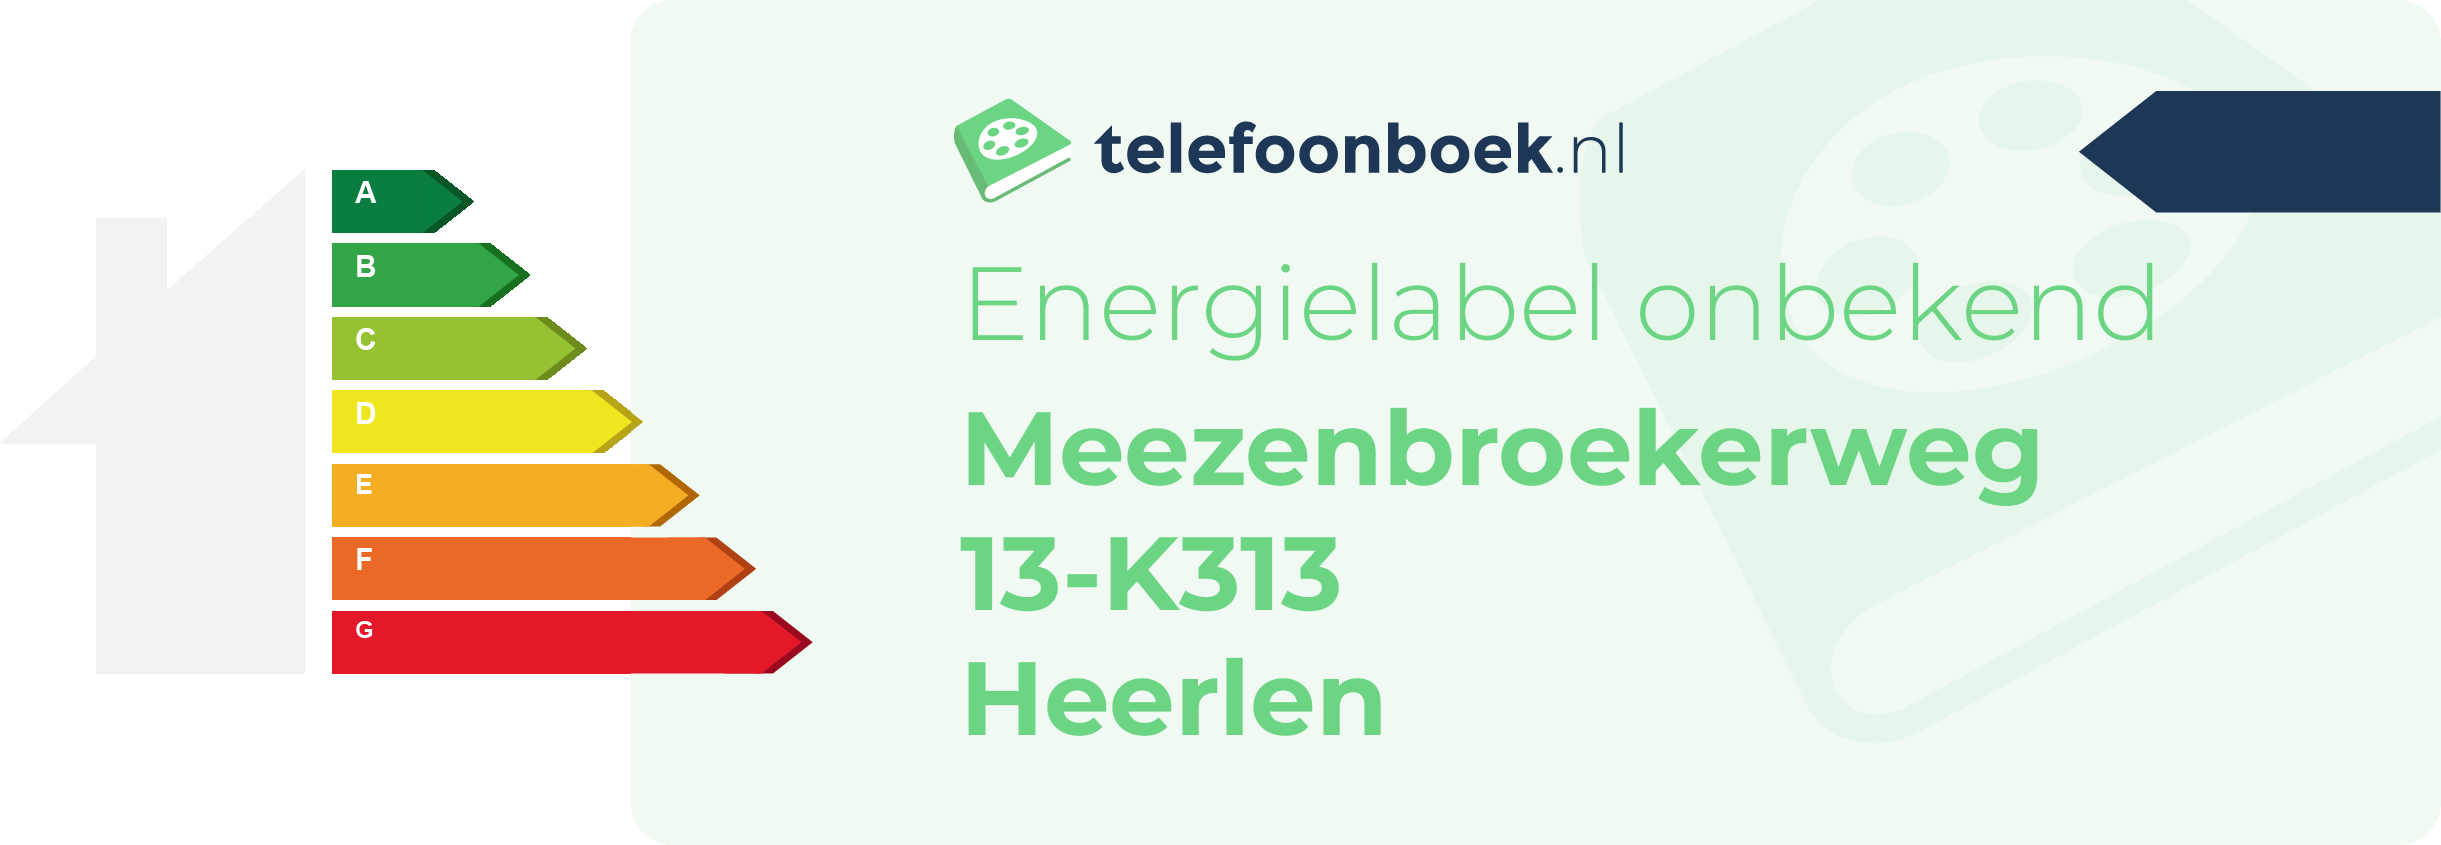 Energielabel Meezenbroekerweg 13-K313 Heerlen